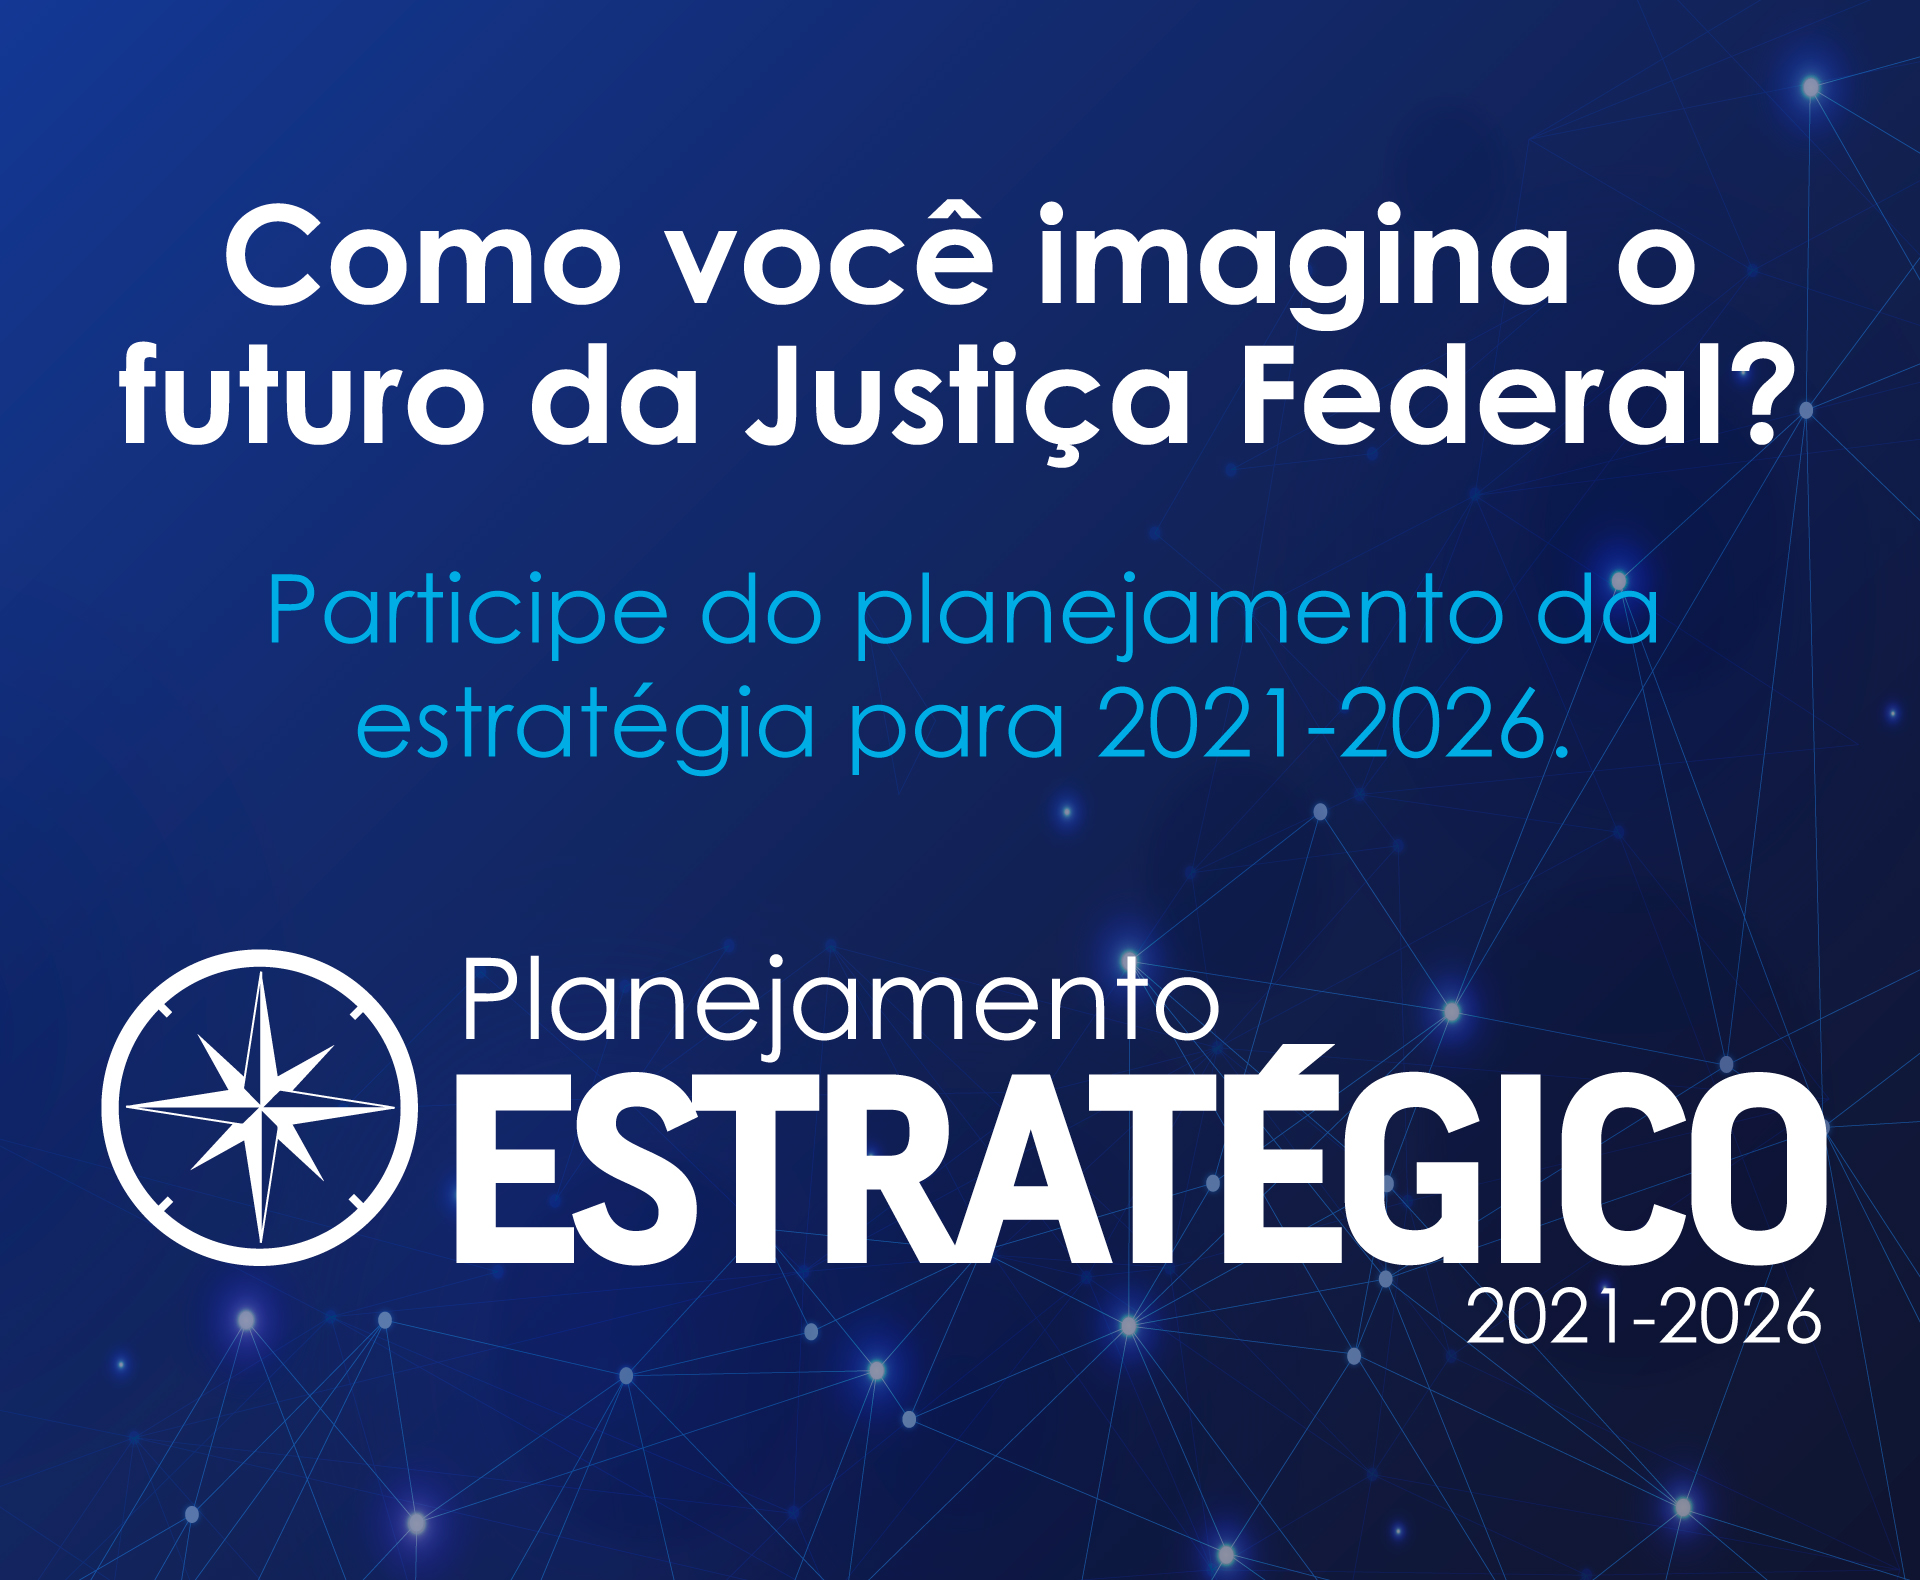 INSTITUCIONAL: Pesquisa sobre planejamento da estratégia da Justiça Federal 2021-2026 termina hoje